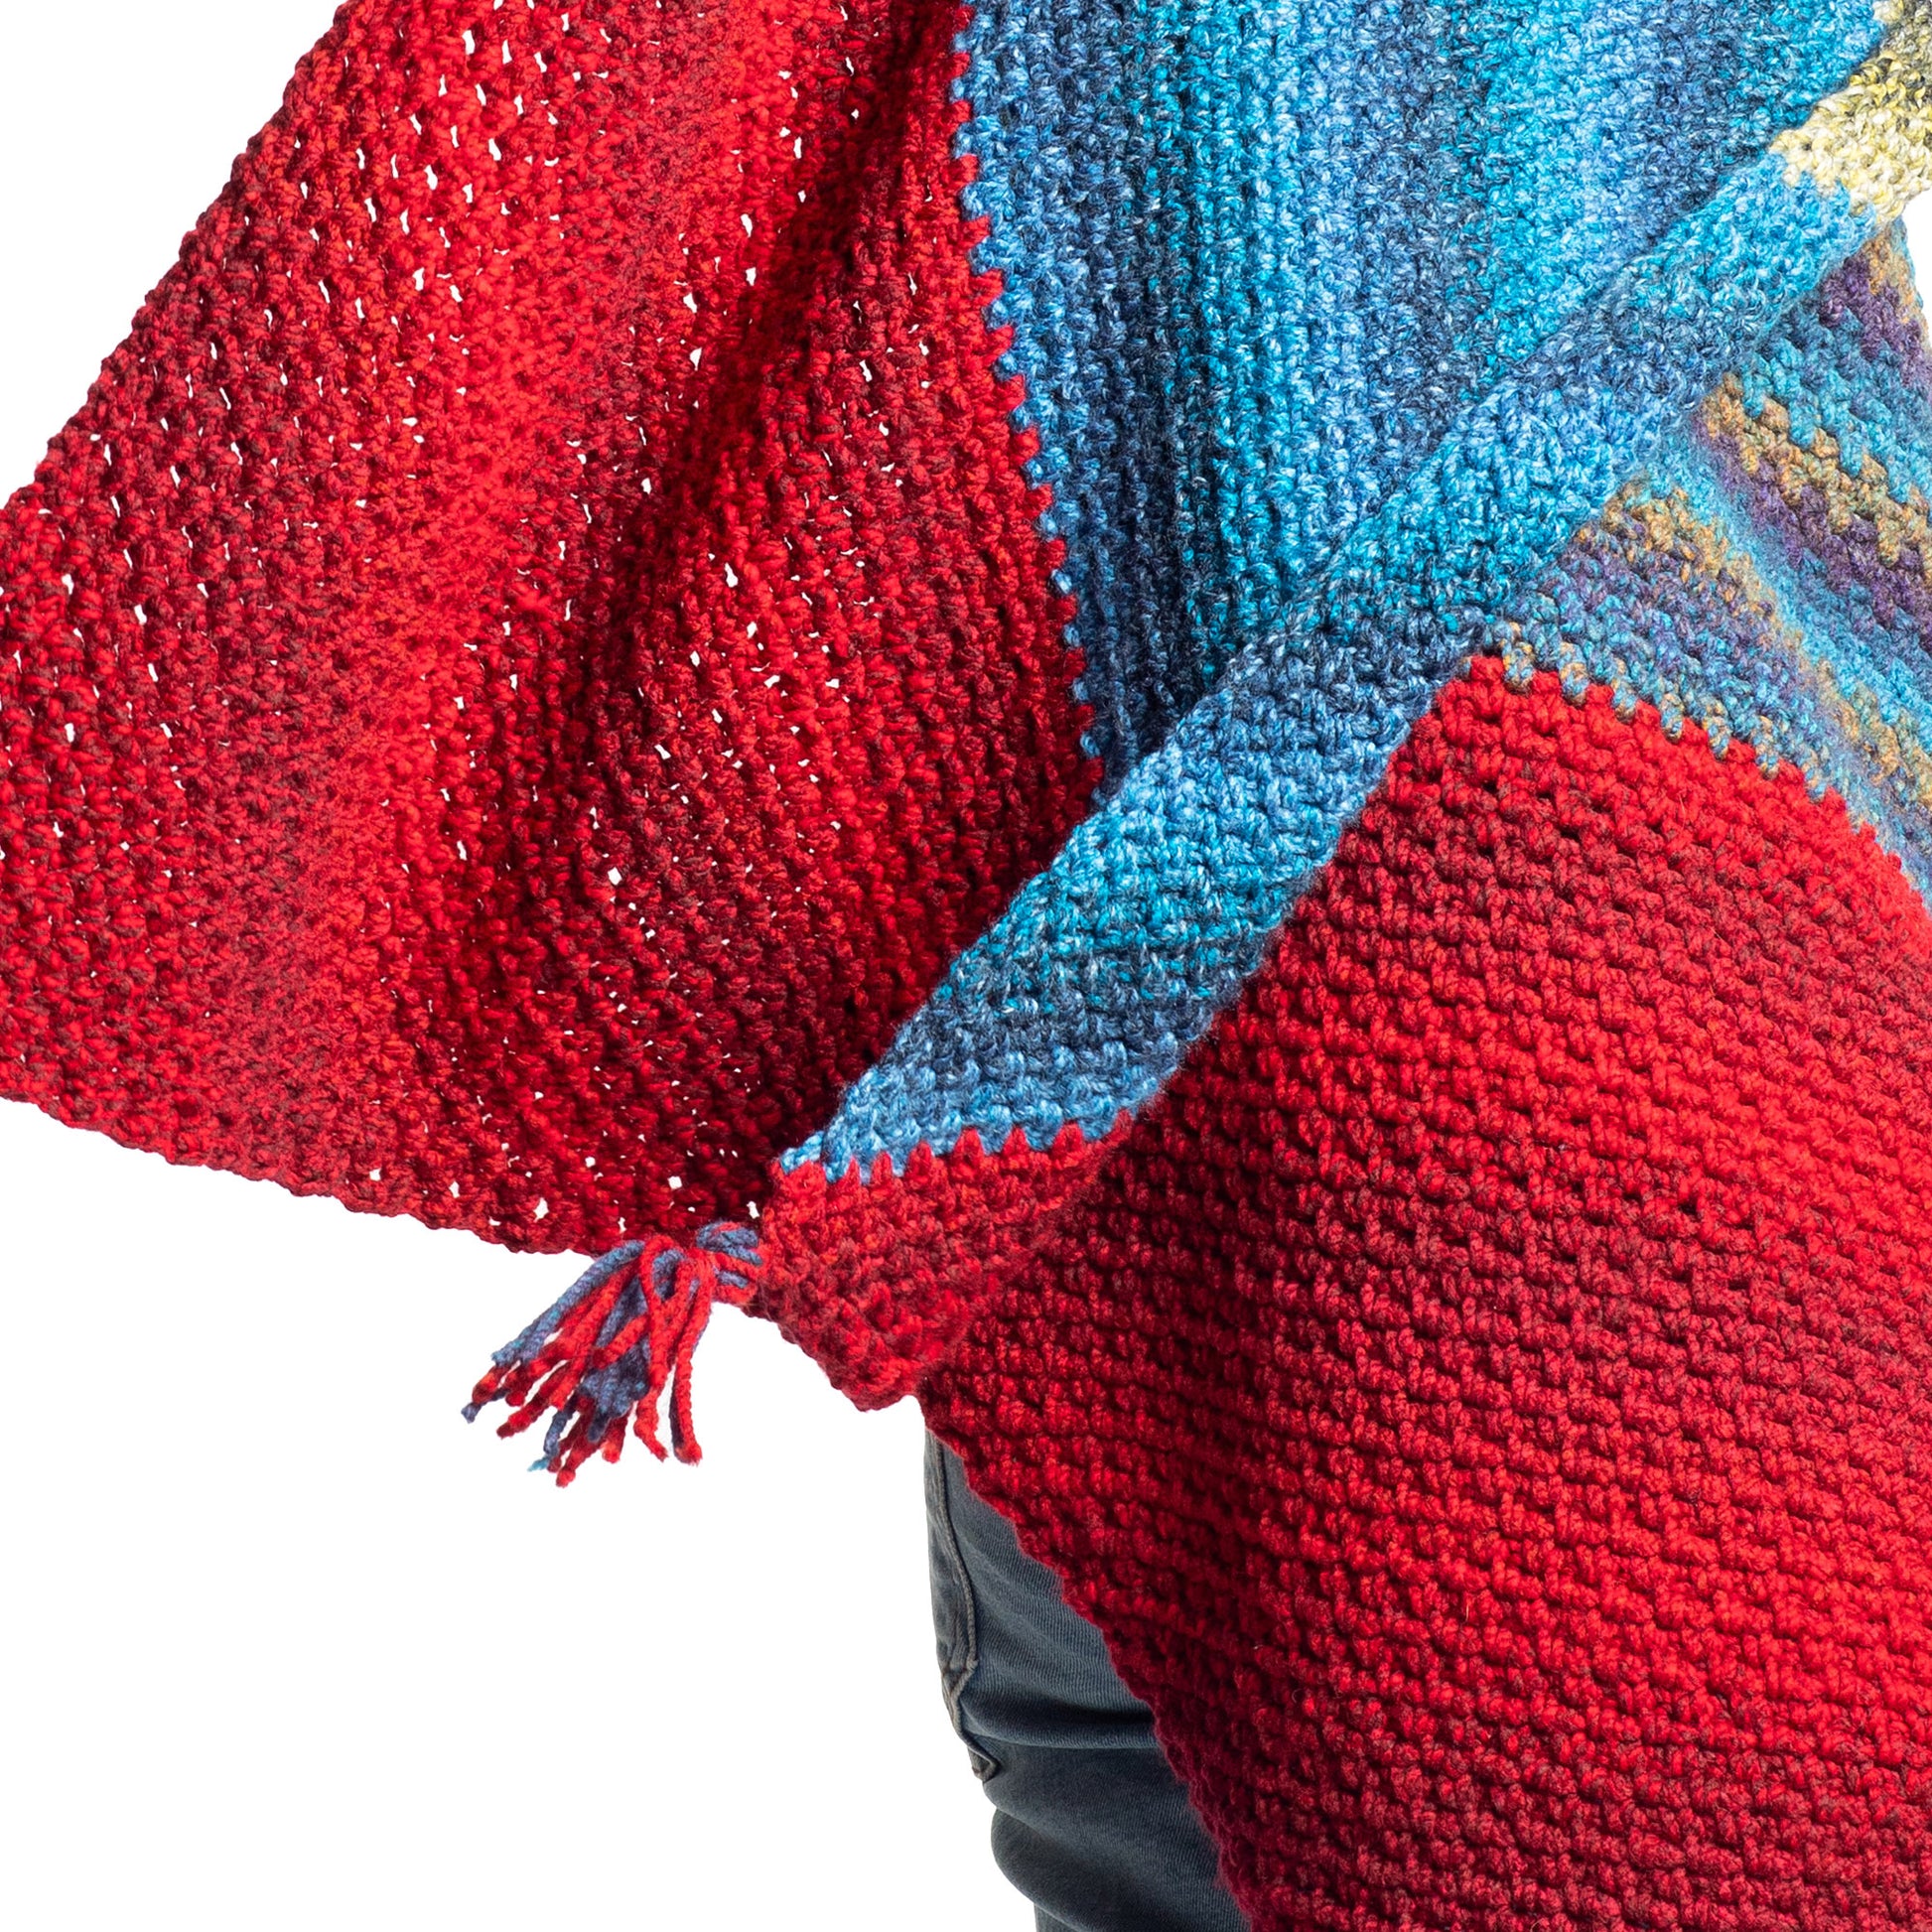 Free Bernat Wavelength Moss Stitch on a bias Shawl Crochet Pattern